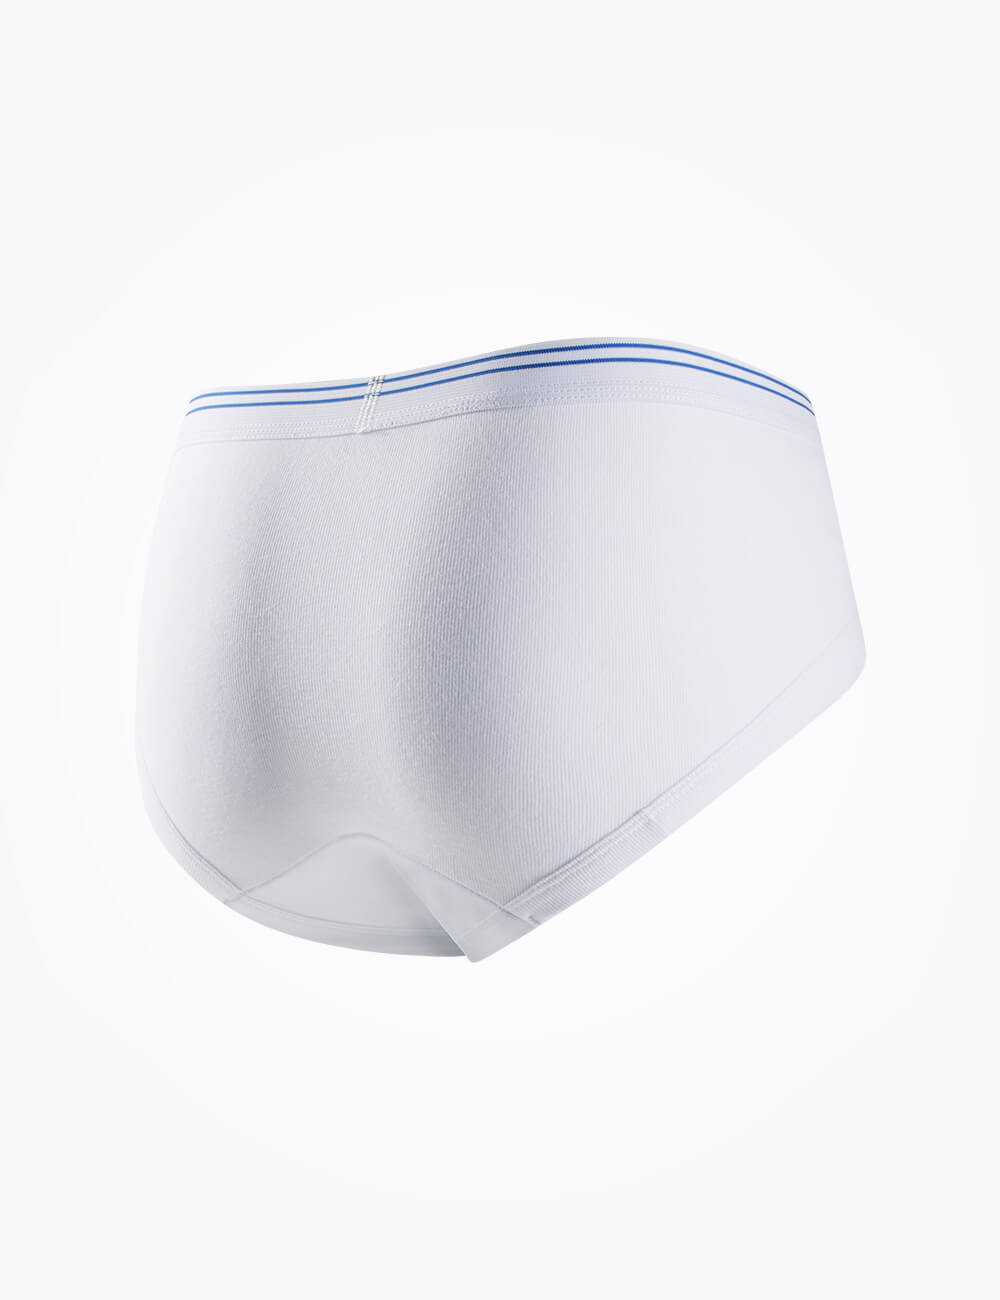 Petey's Washable Incontinence Underwear Briefs for Men, Super